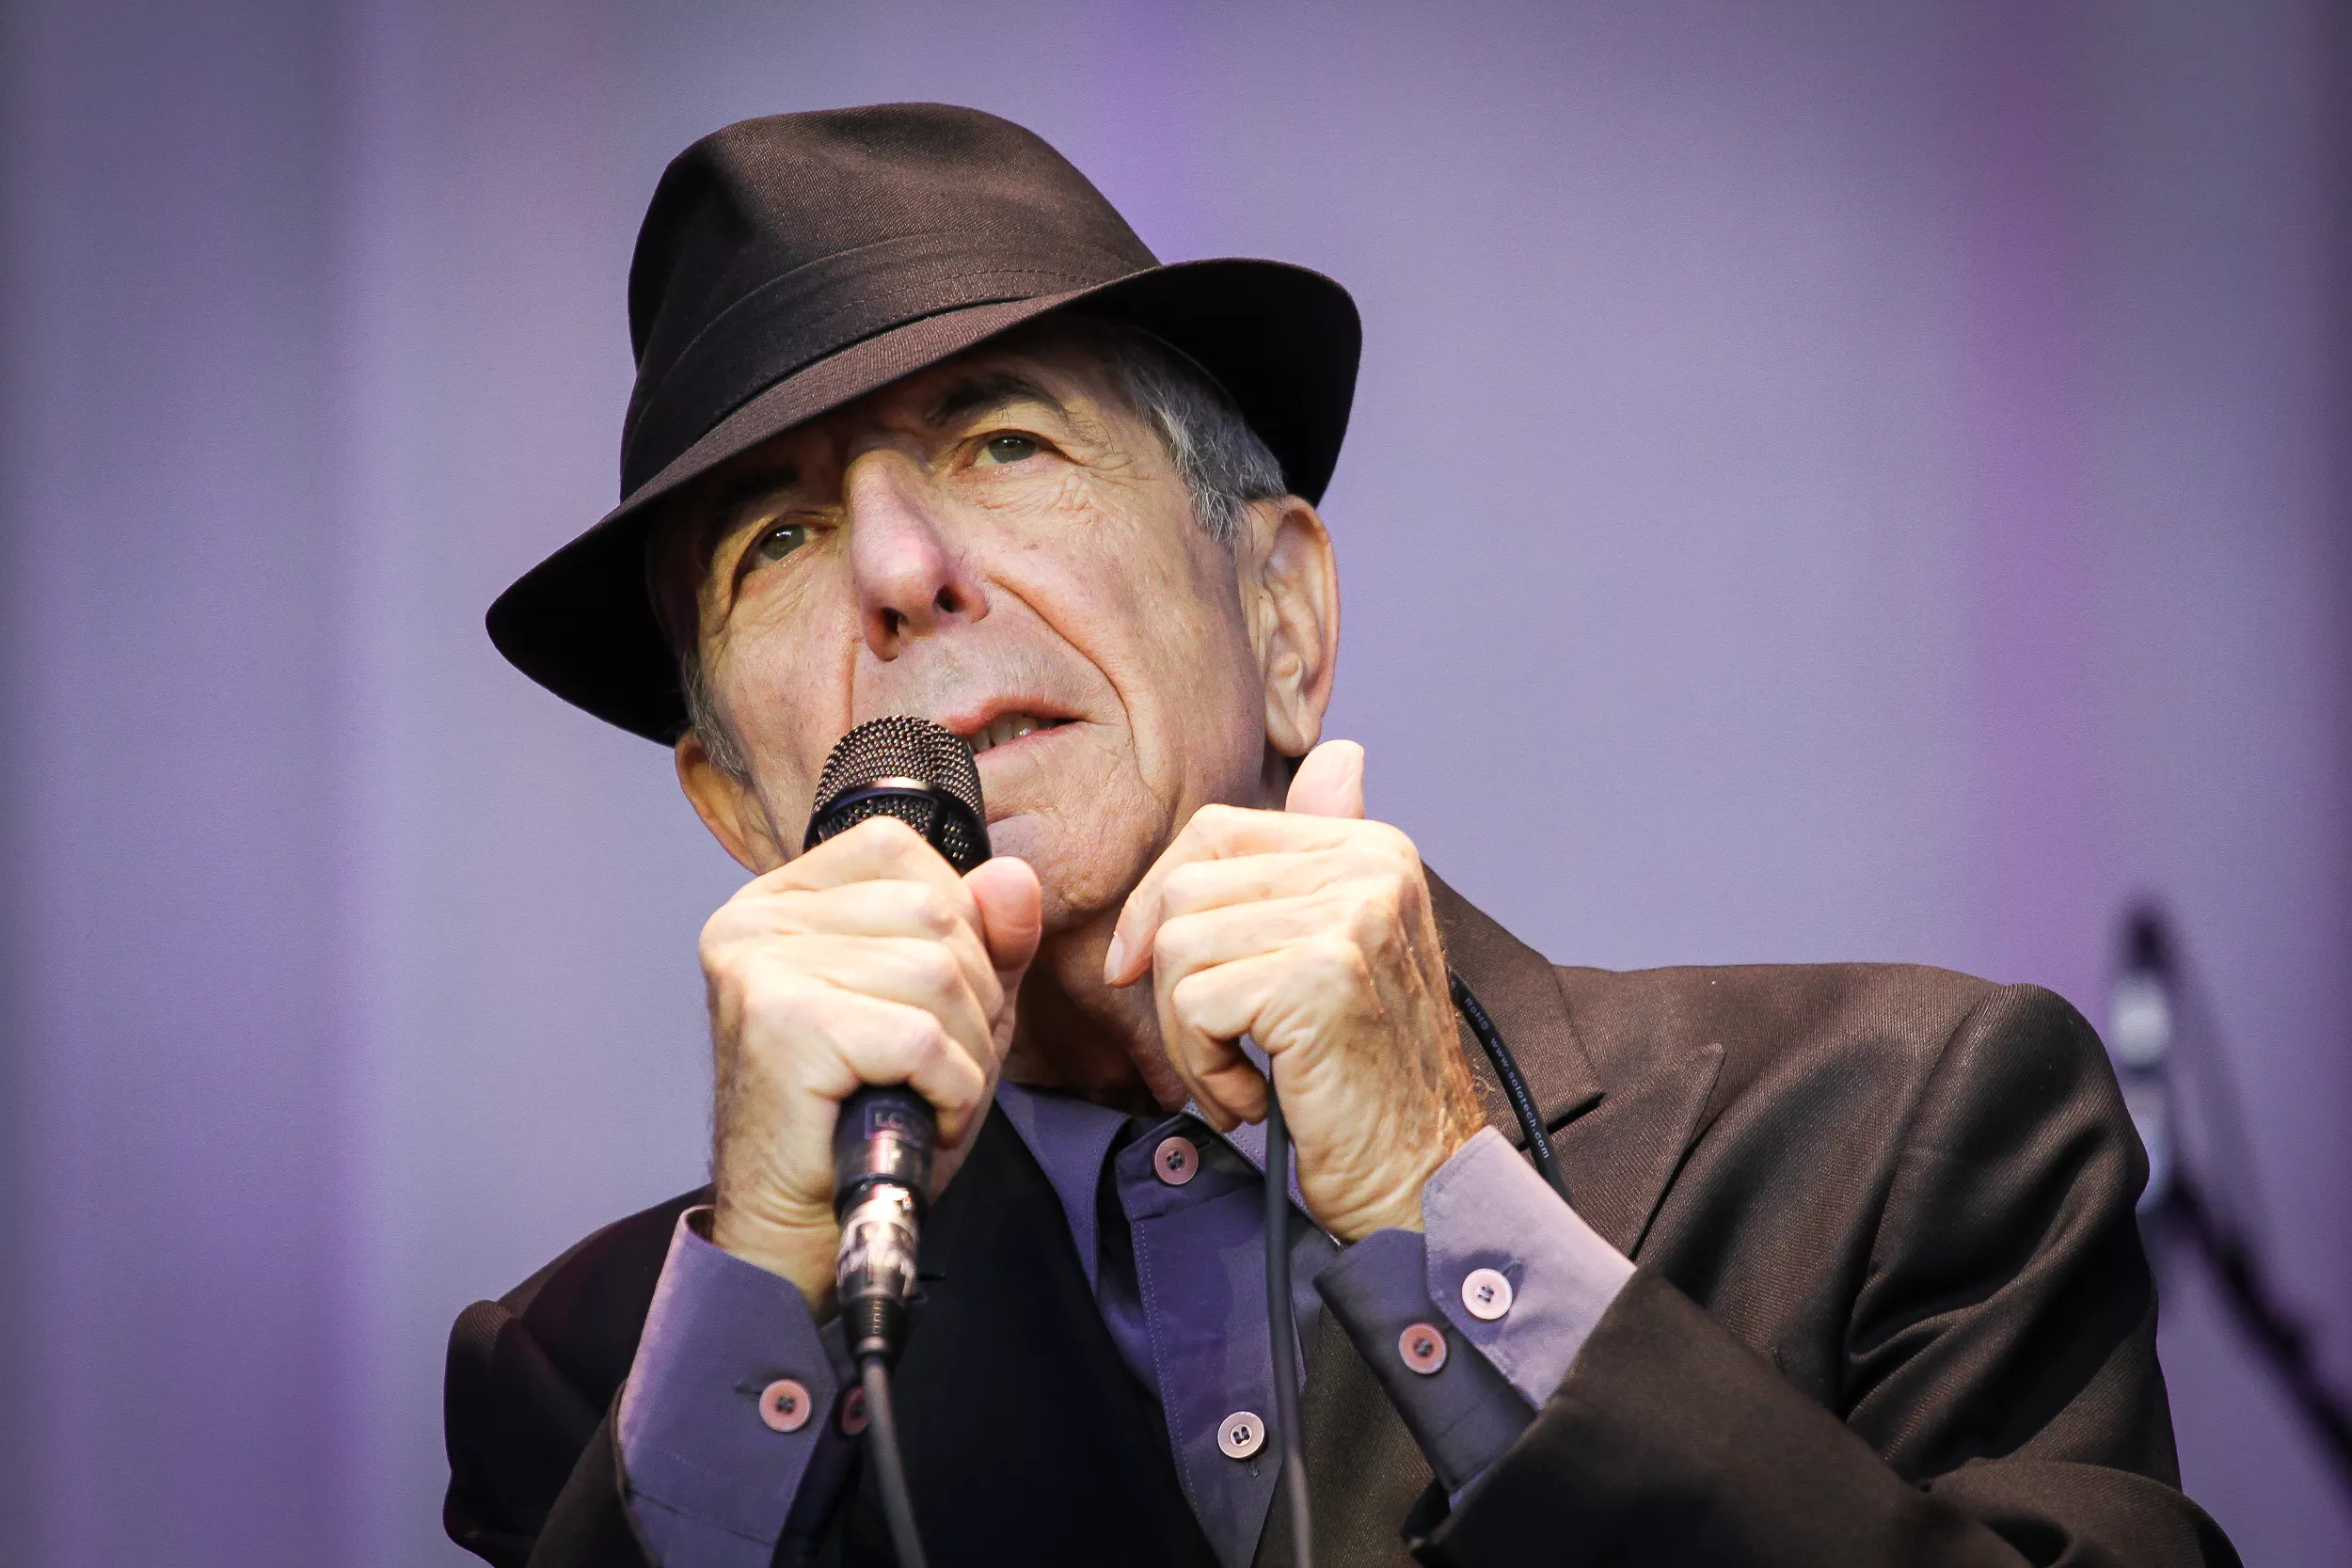 Leonard Cohens arvingar säljer låtkatalogen